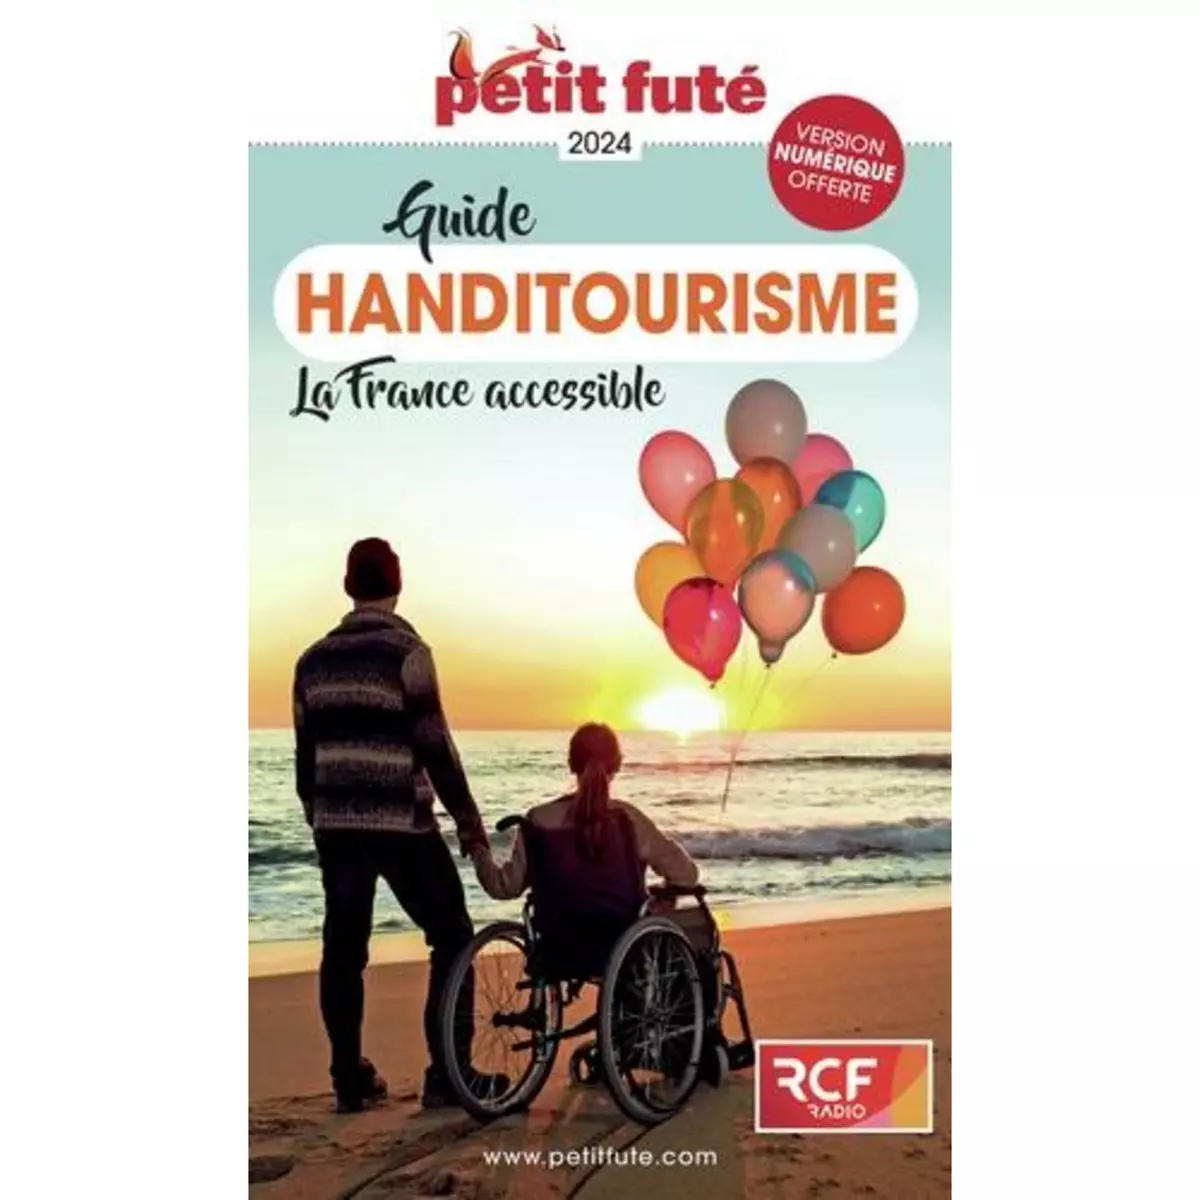  PETIT FUTE HANDITOURISME. EDITION 2024, Petit Futé